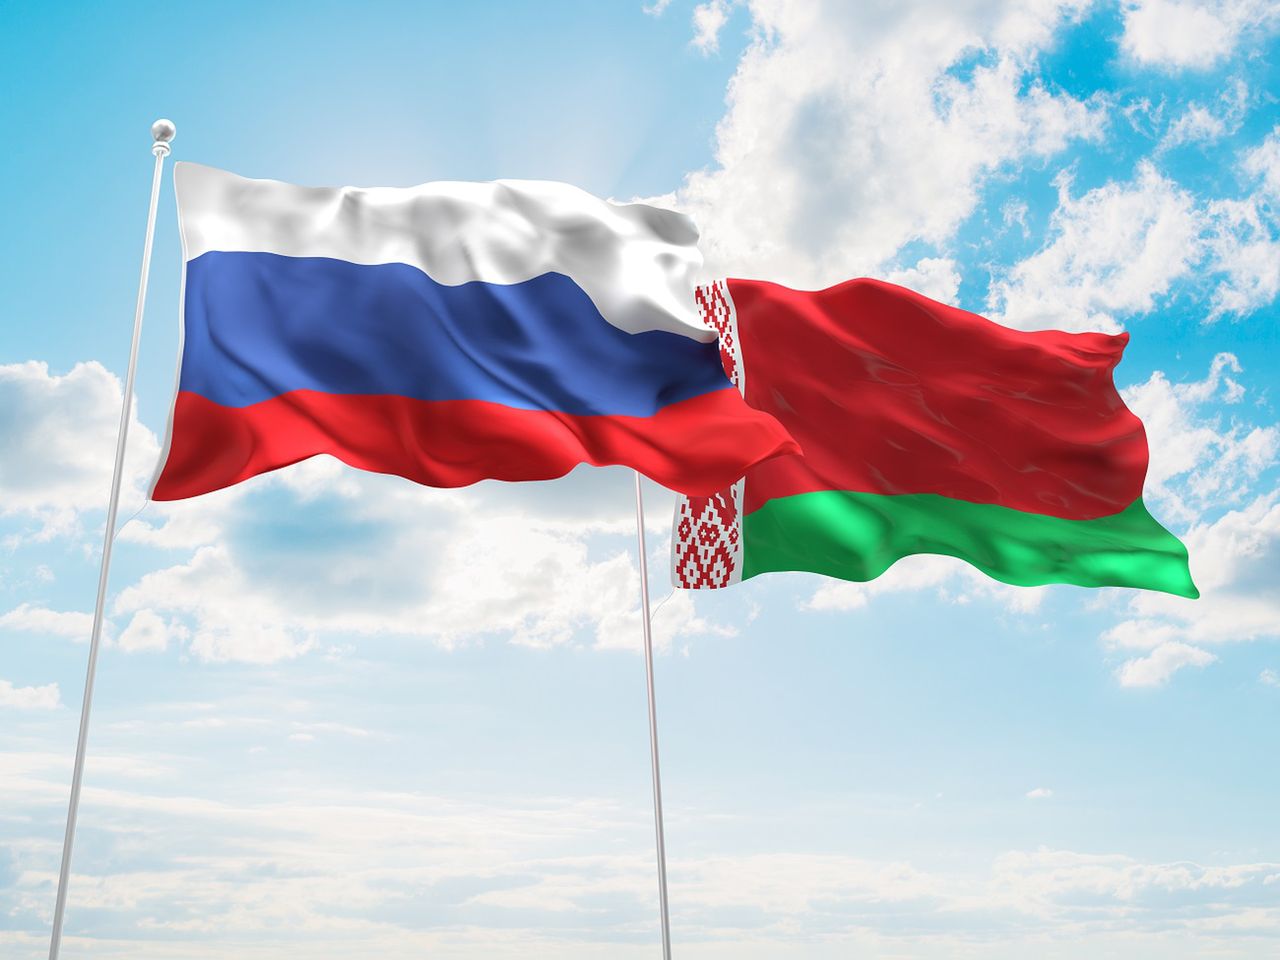 Rosja i Białoruś planują pogłębić integrację. "To zagraża niepodległości" - grzmi opozycja